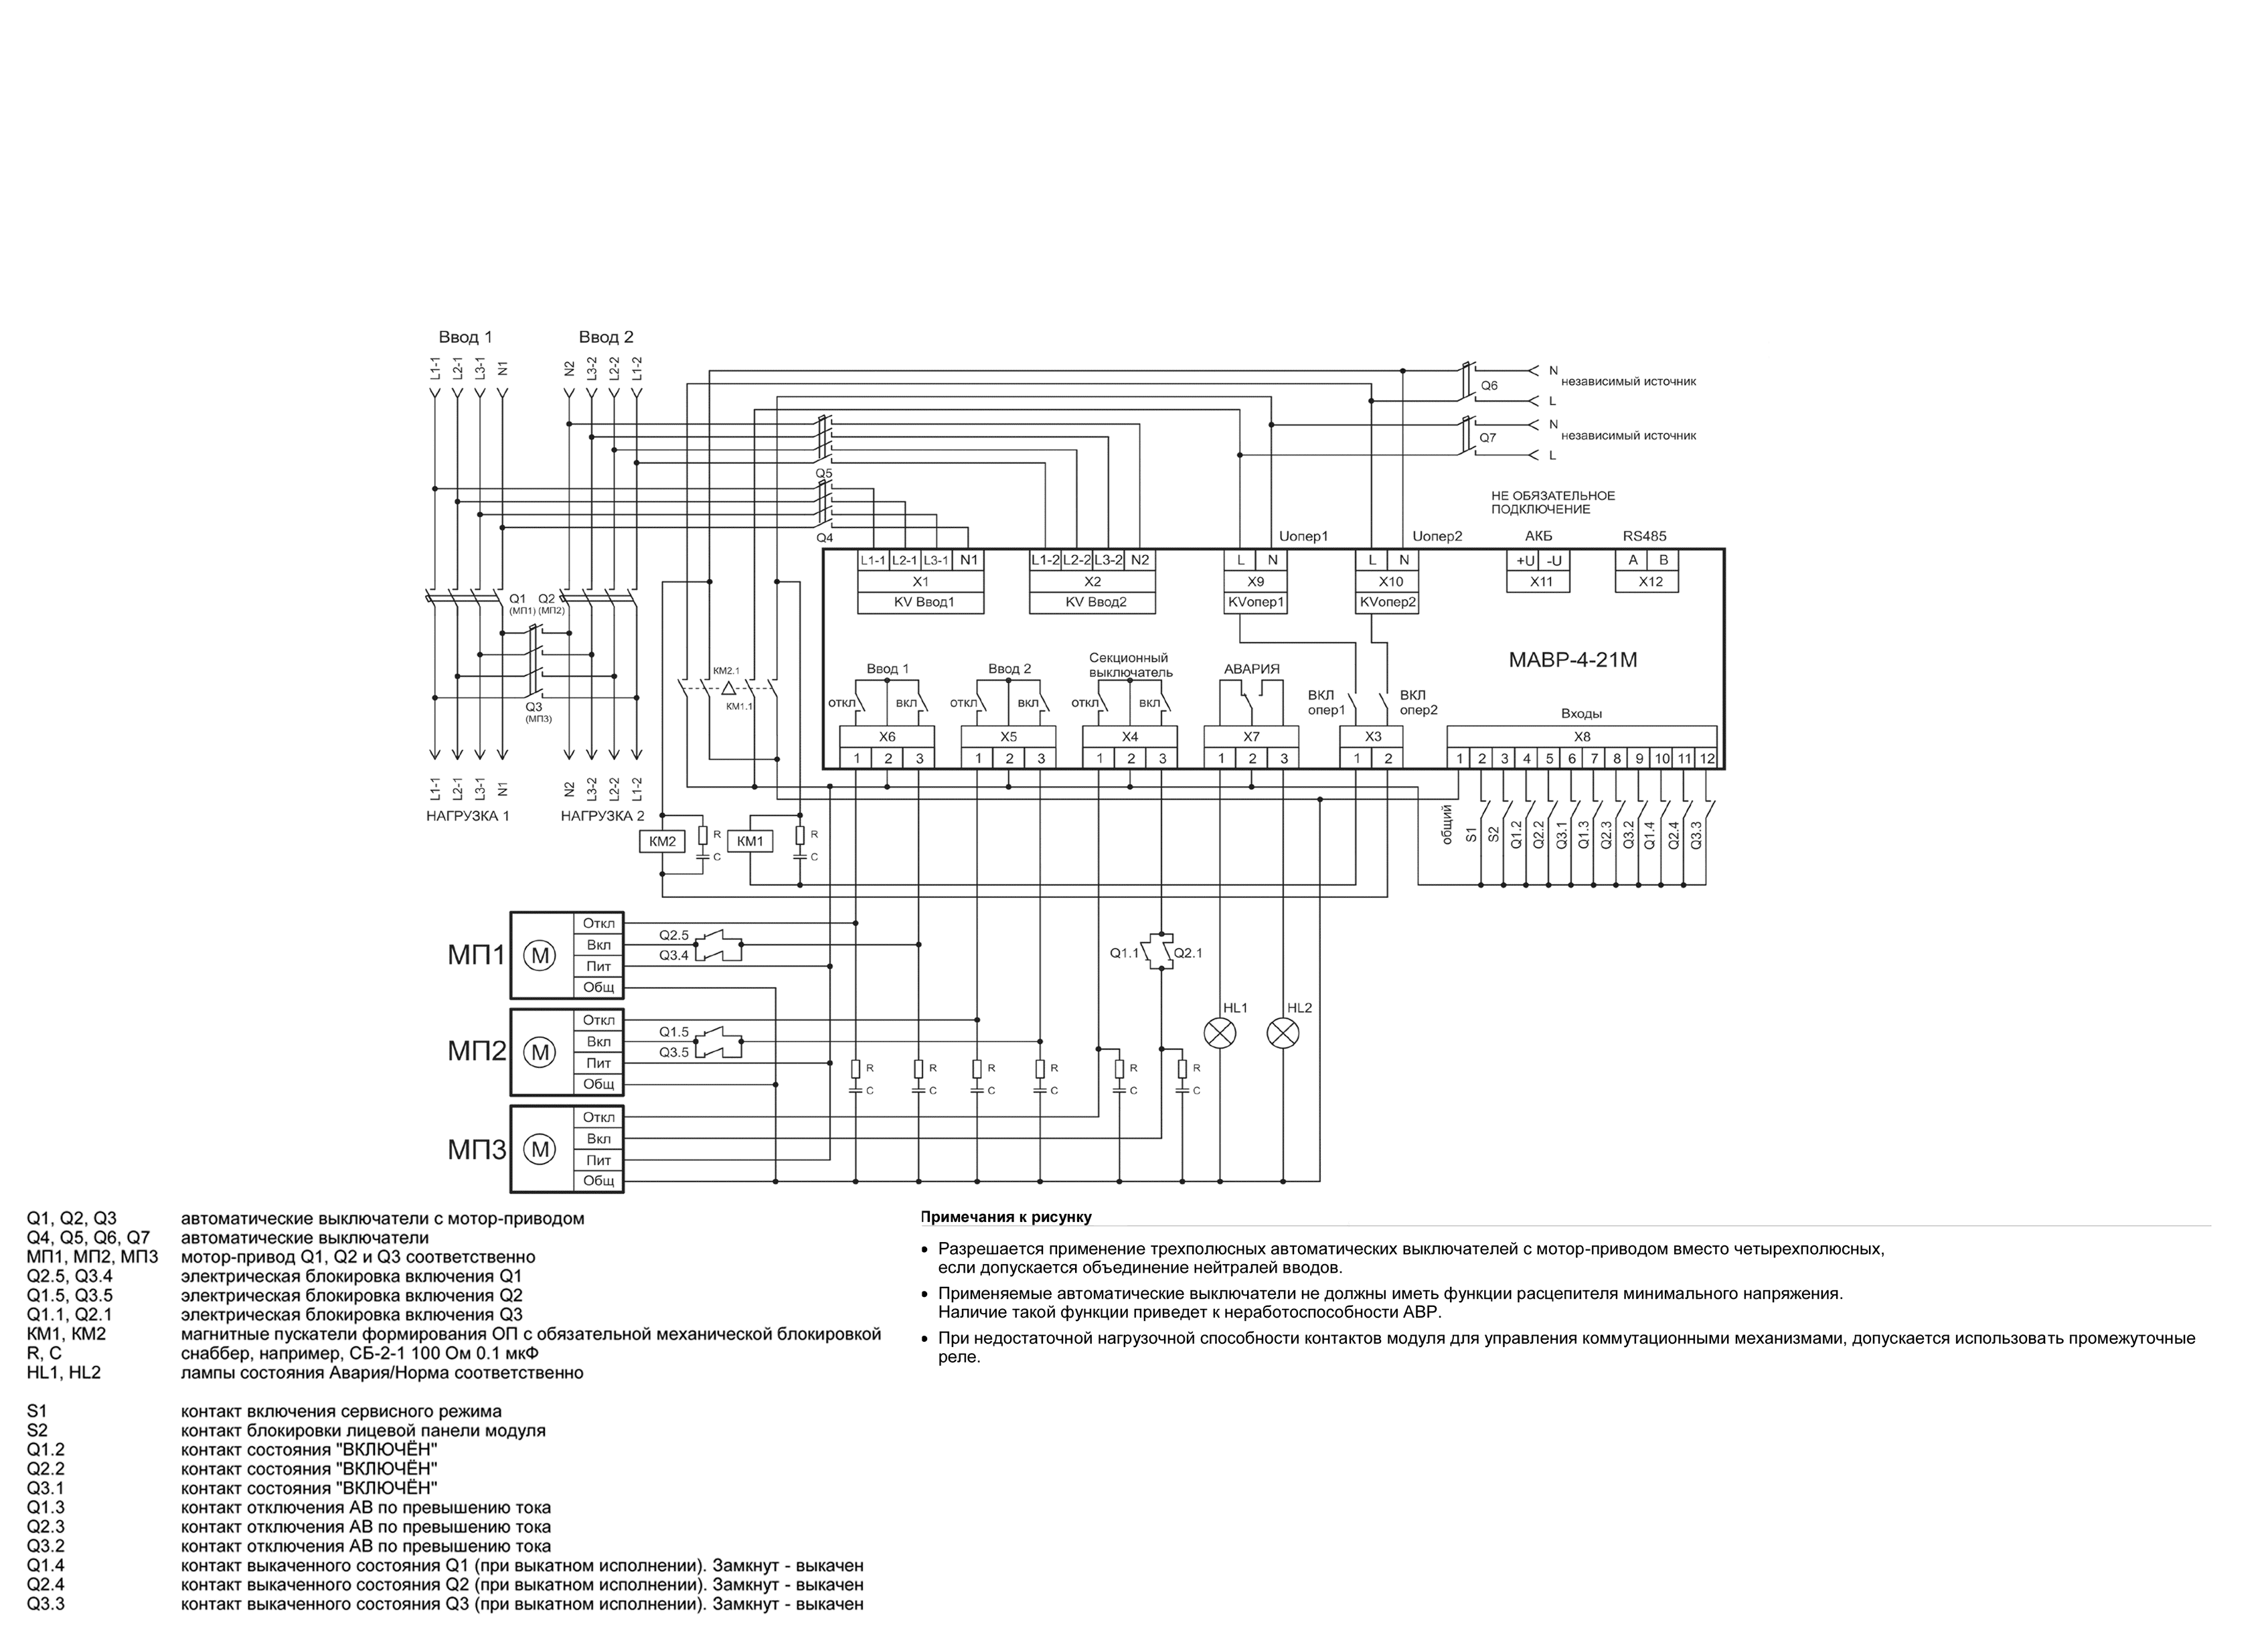 Схема управления автоматическими мотор приводами с оперативным питанием модуля от независимых источников питания МАВР-4-21М